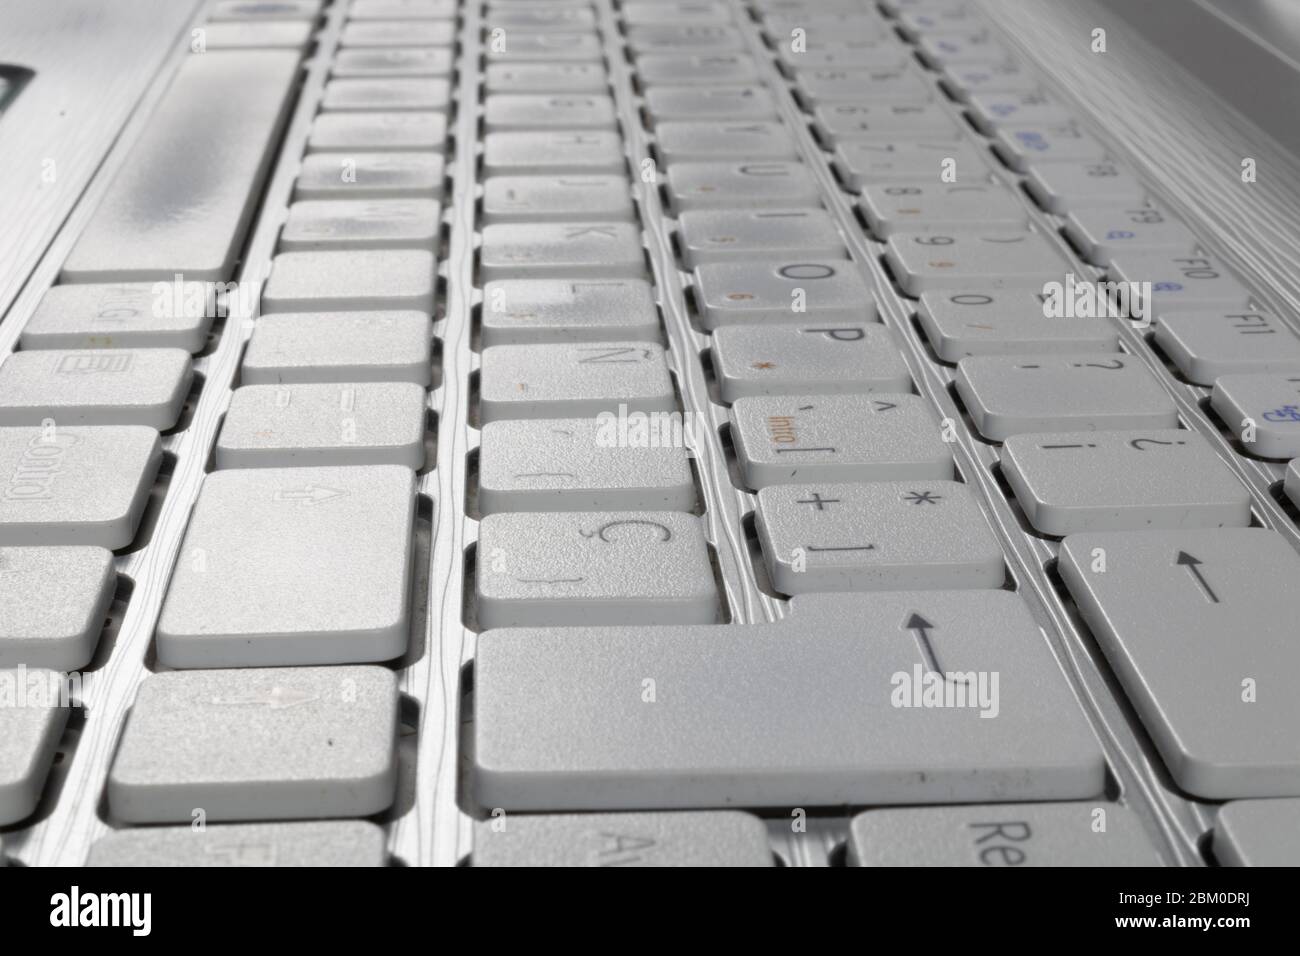 ordinateur portable gris avec clavier blanc Banque D'Images